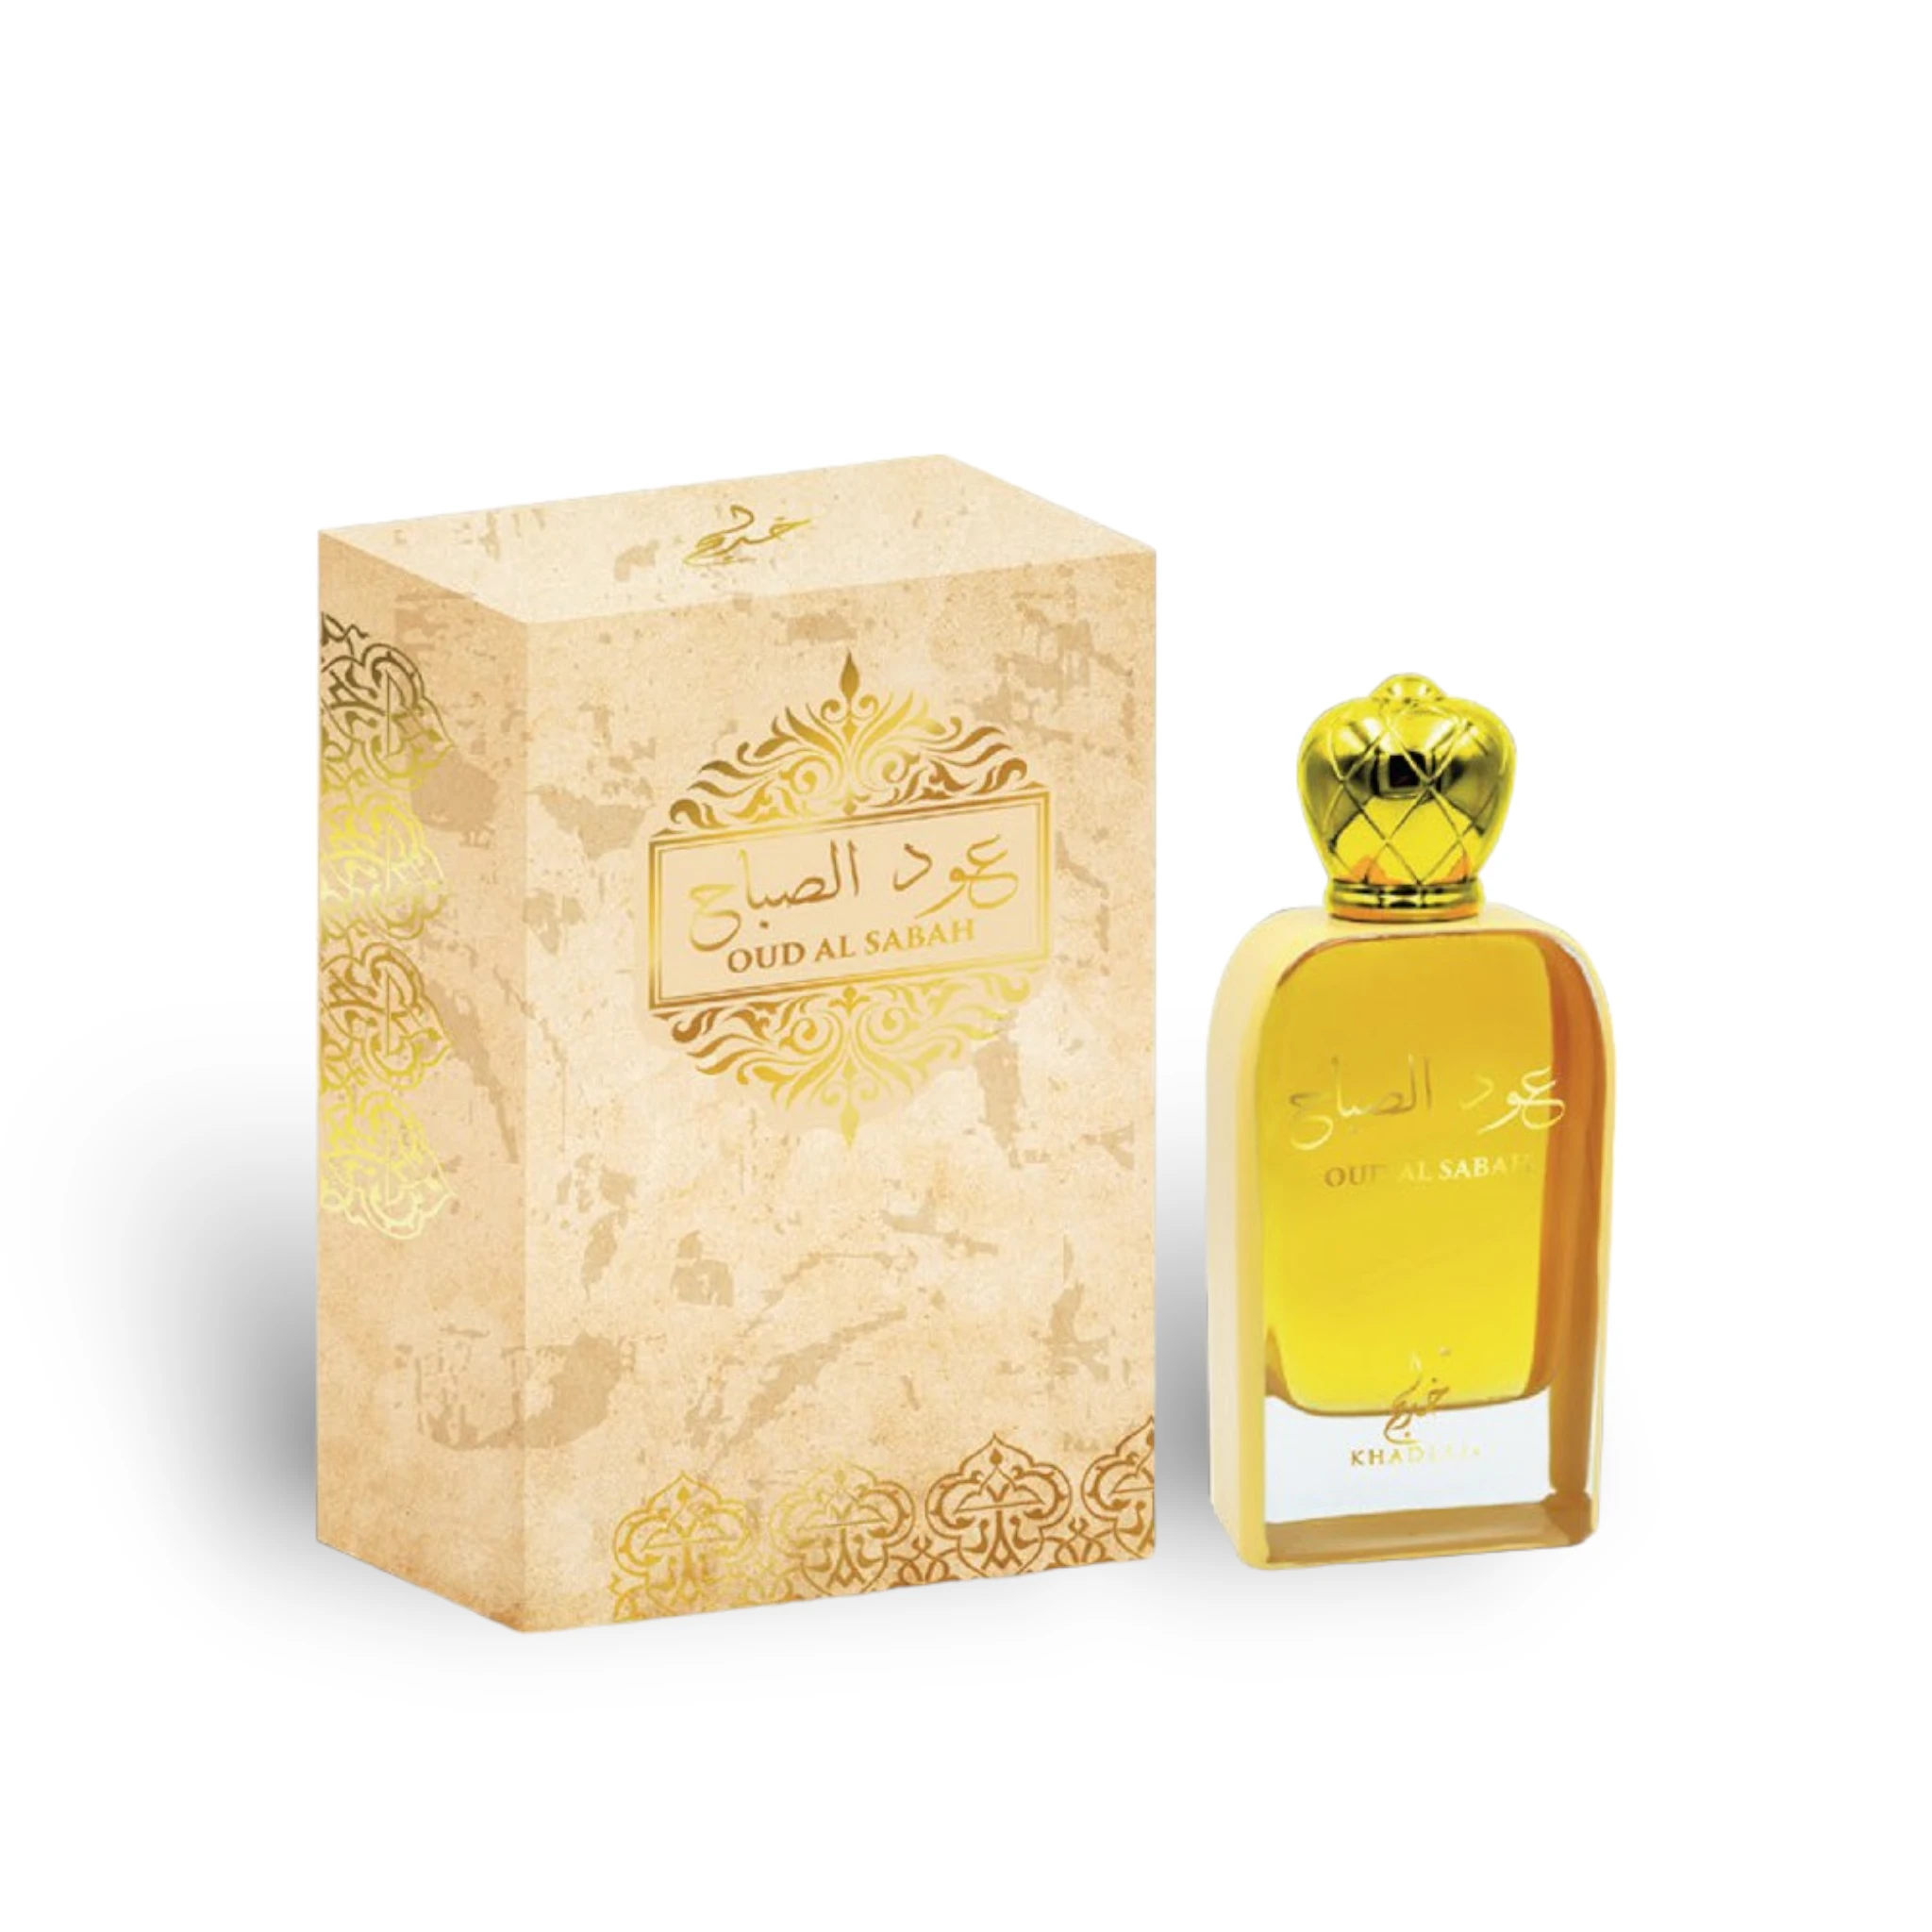 Oud Al Sabah Perfume Eau De Parfum 100Ml By Khadlaj